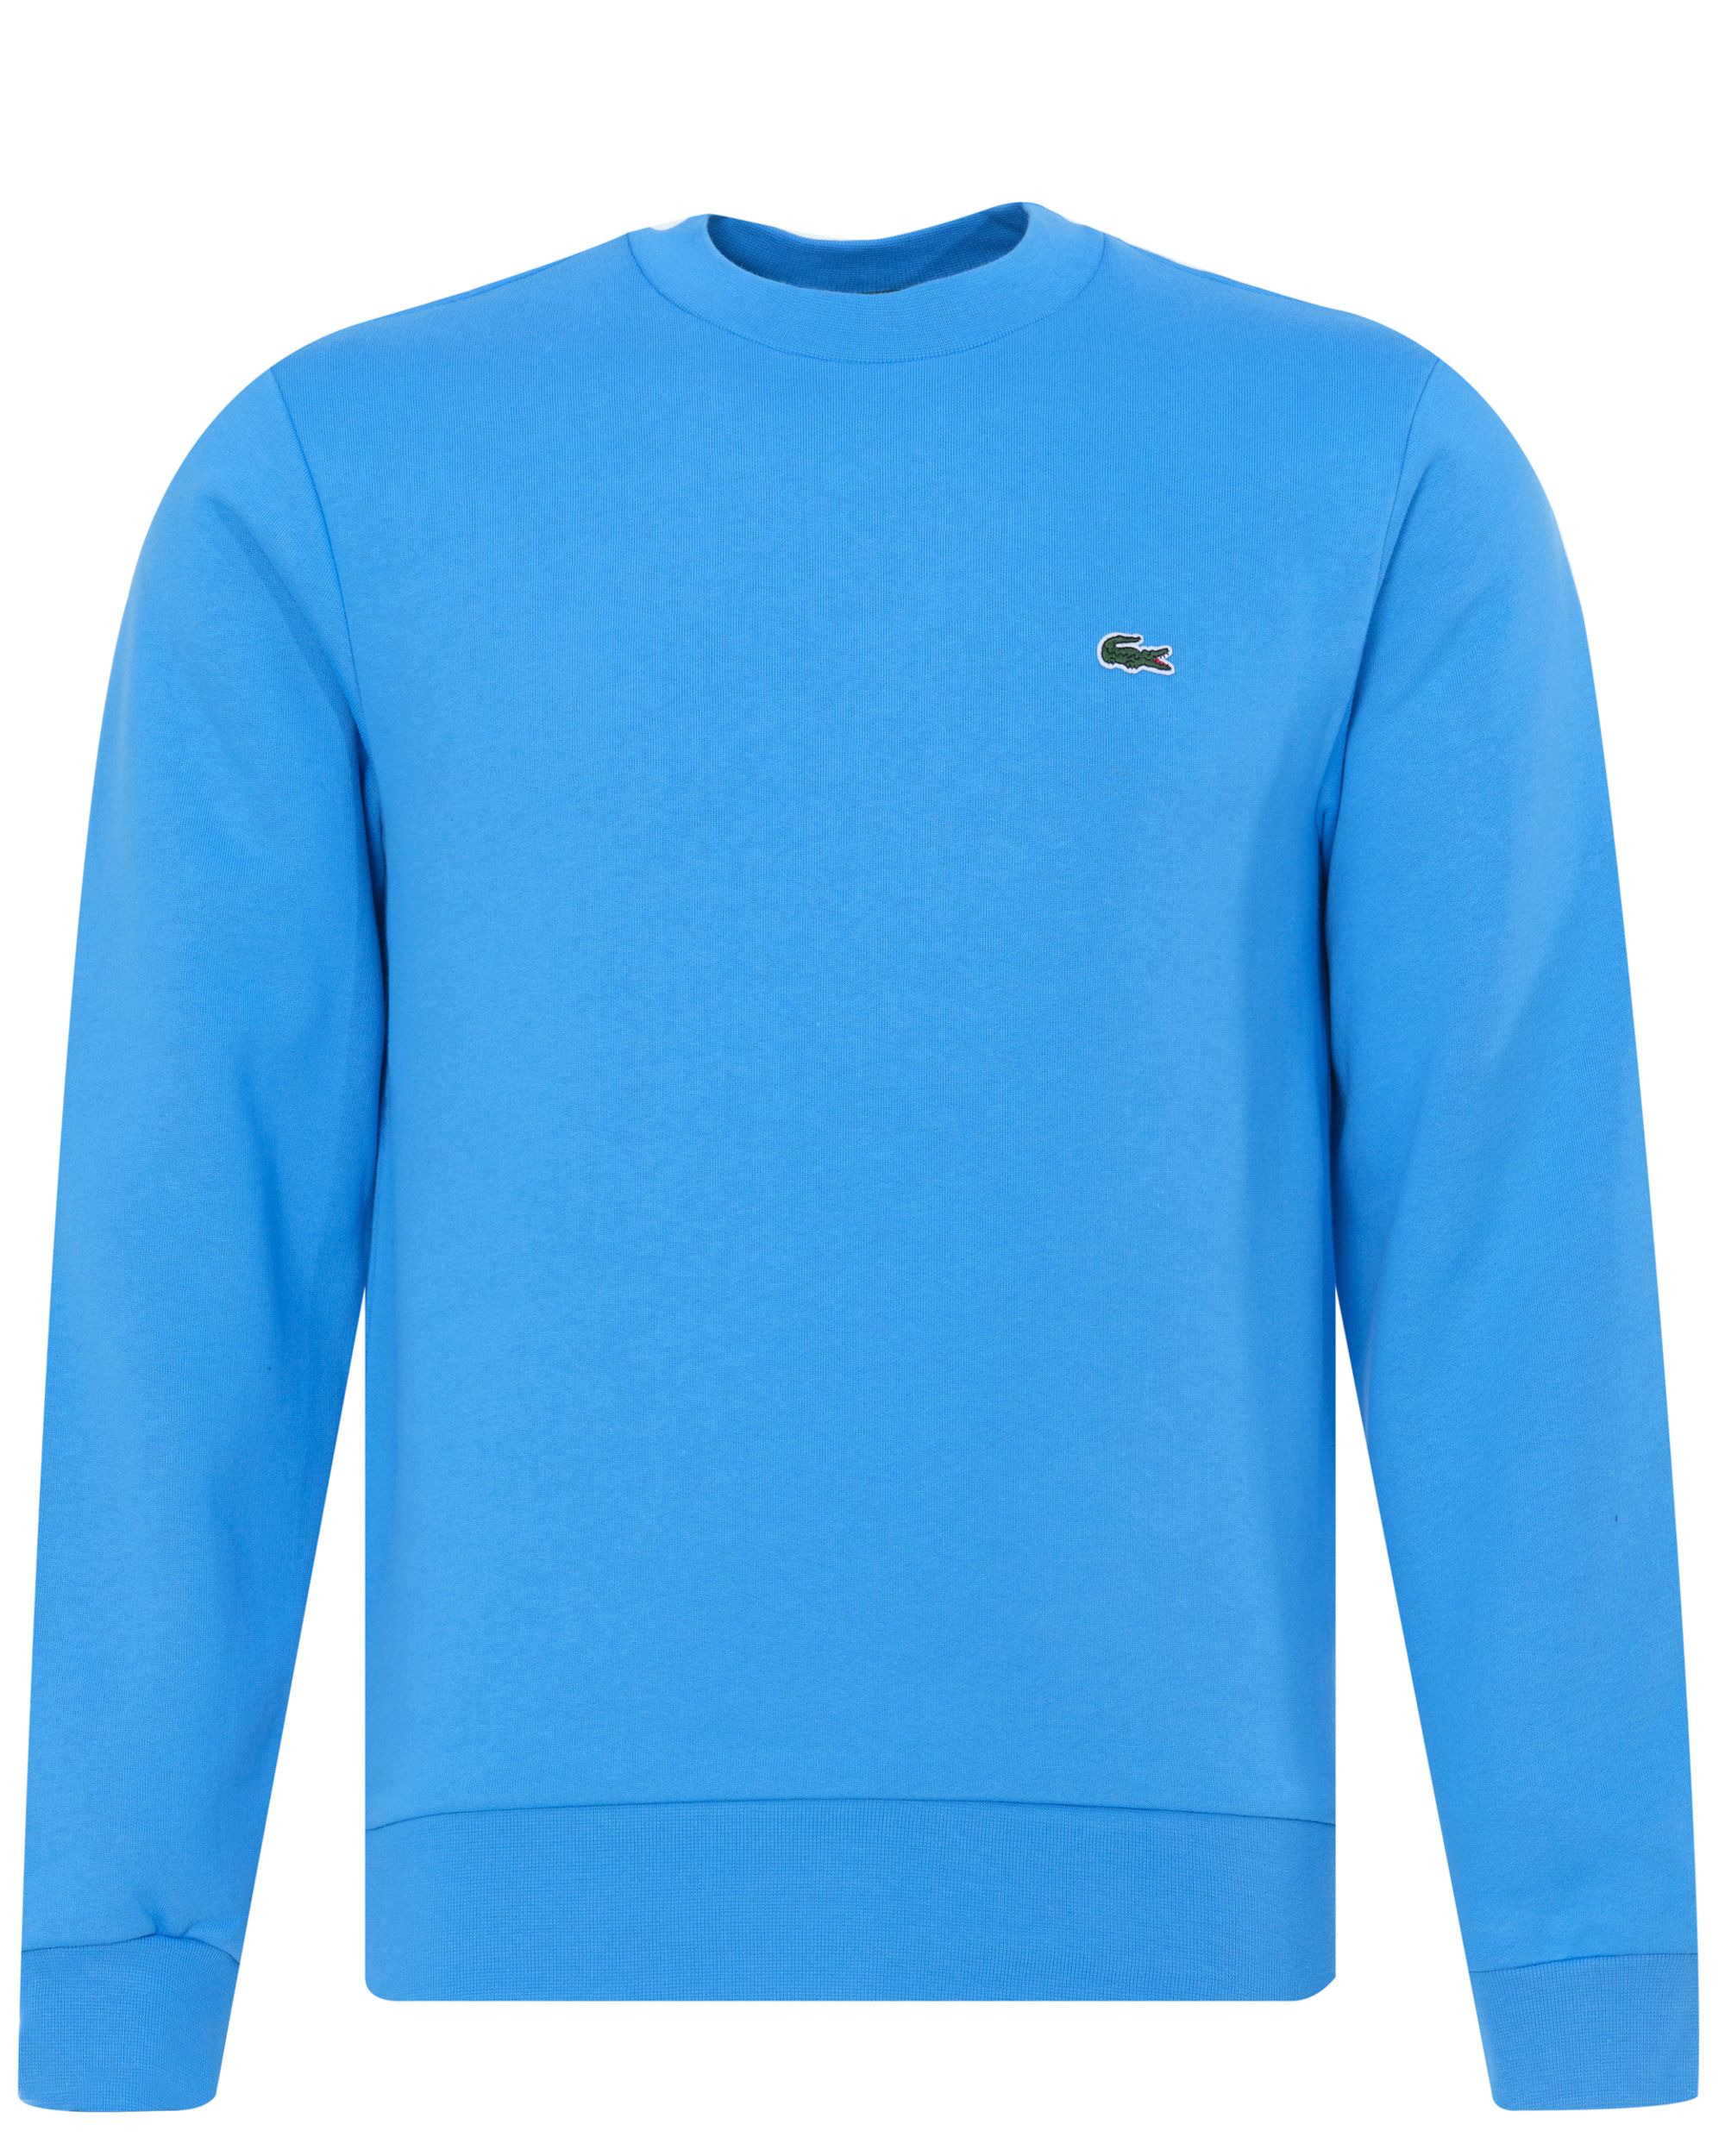 Lacoste Sweater Licht blauw 078814-002-4